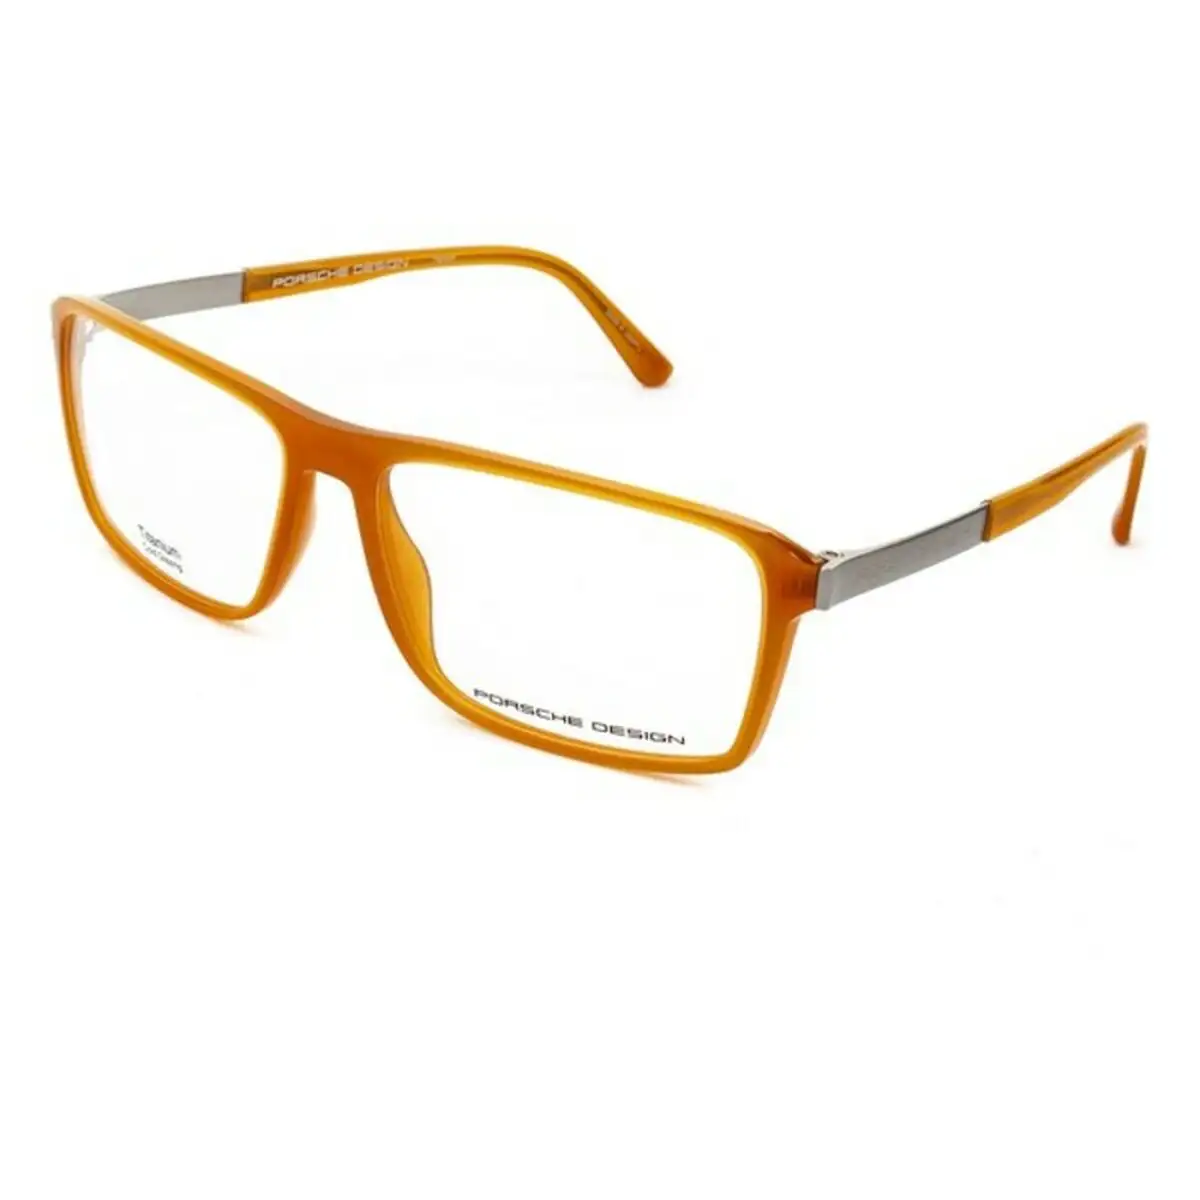 Monture de lunettes homme porsche p8259 c marron o 57 mm _5850. Bienvenue sur DIAYTAR SENEGAL - Où le Shopping est une Affaire Personnelle. Découvrez notre sélection et choisissez des produits qui reflètent votre unicité et votre individualité.